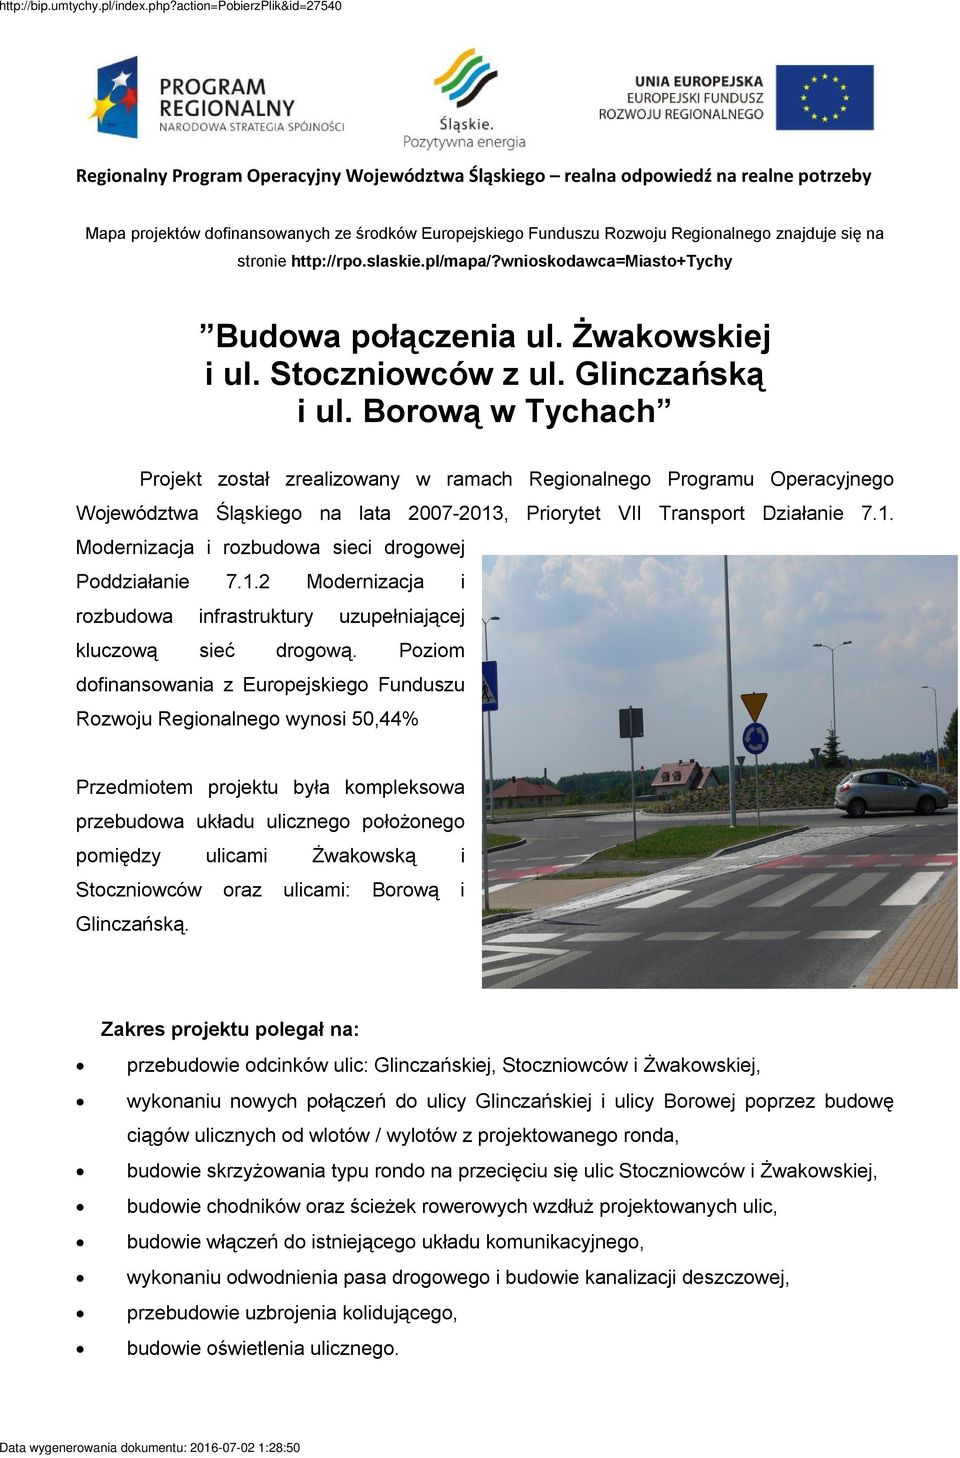 Borową w Tychach Projekt został zrealizowany w ramach Regionalnego Programu Operacyjnego Województwa Śląskiego na lata 2007-2013, Priorytet VII Transport Działanie 7.1. Modernizacja i rozbudowa sieci drogowej Poddziałanie 7.